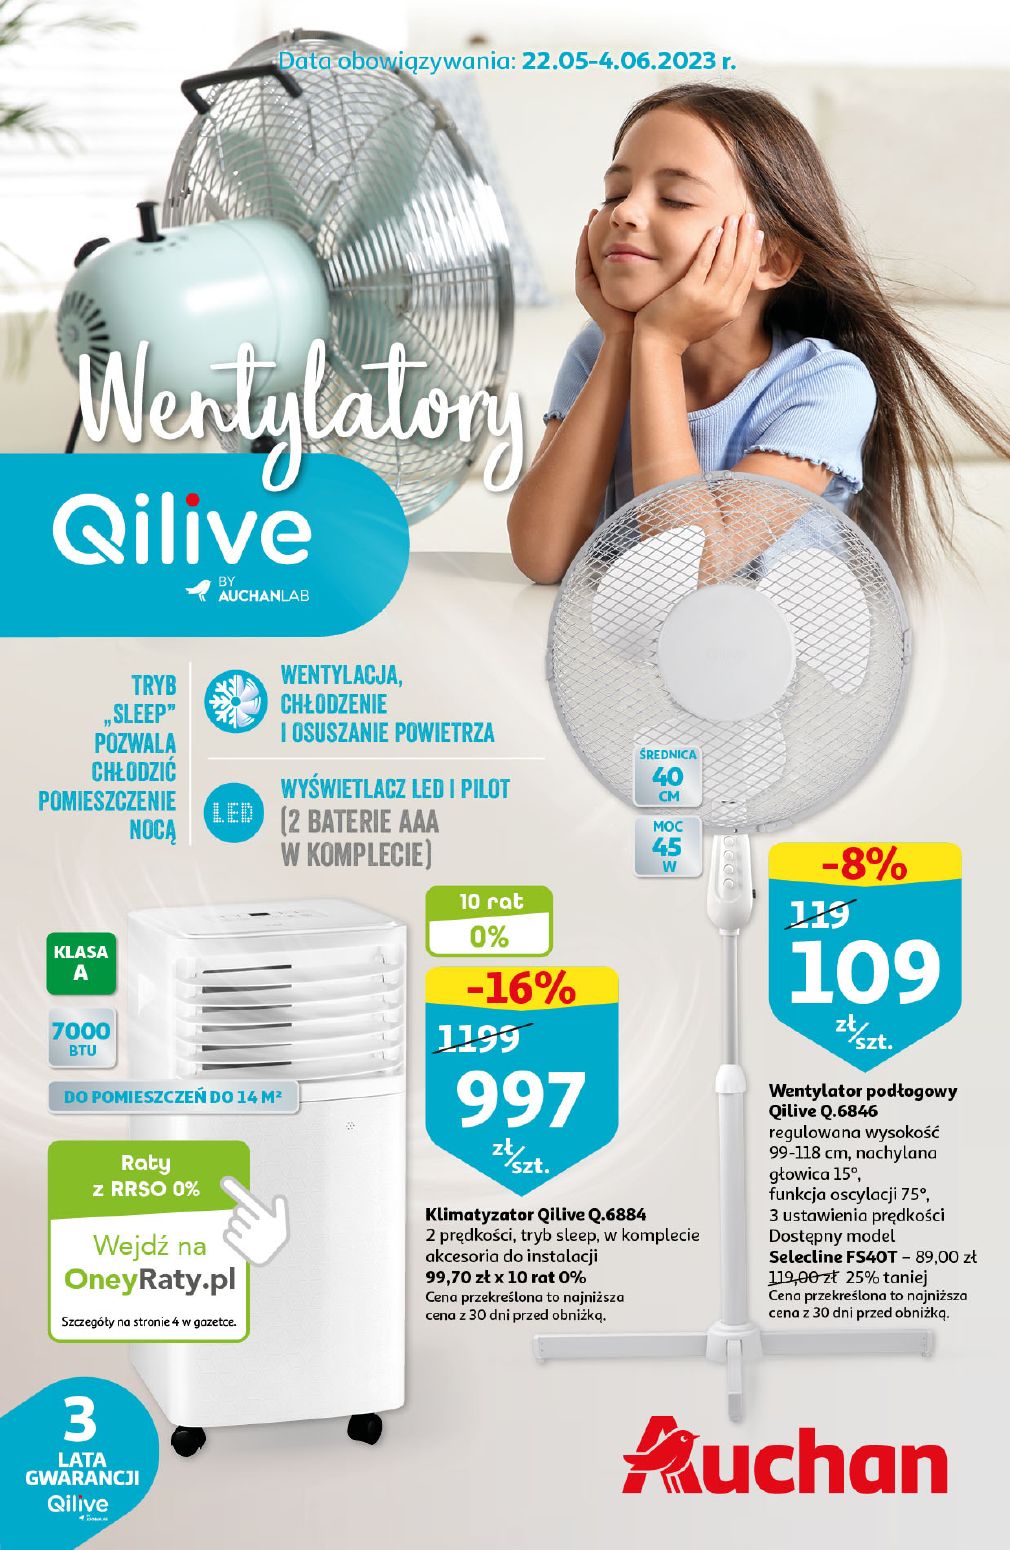 акційний каталог Auchan – Wentylatory Qilive by AUCHANLAB - Сторінка 1